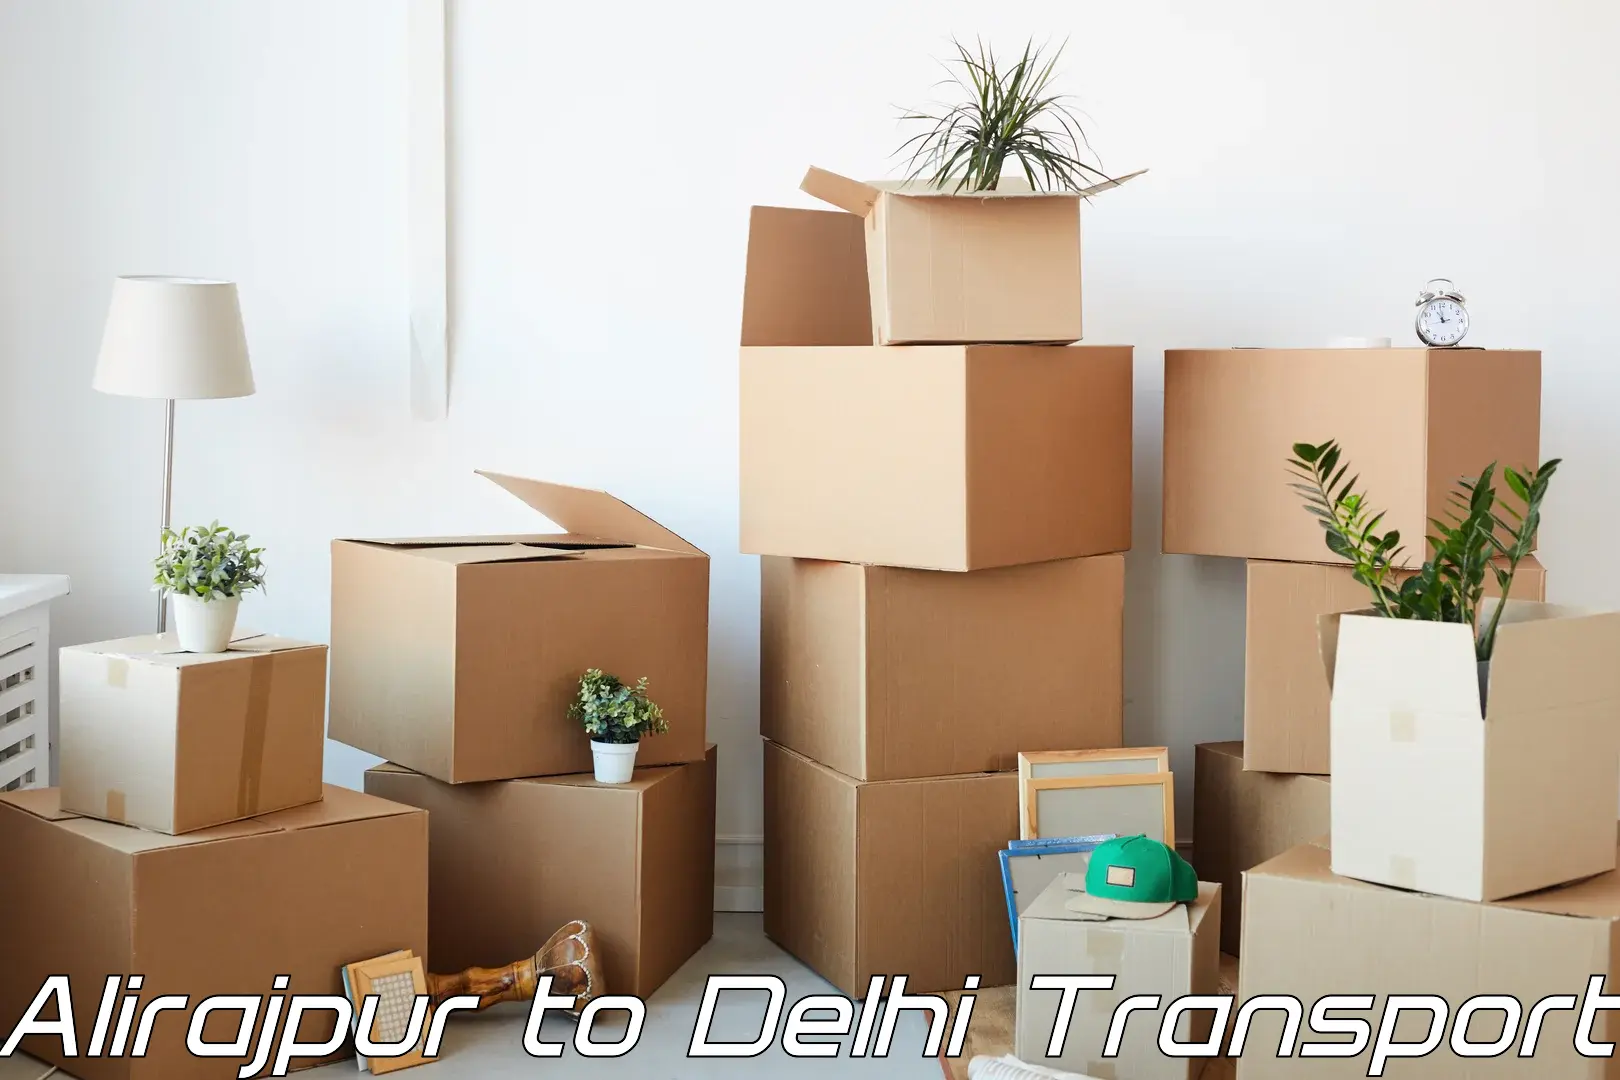 Part load transport service in India Alirajpur to Delhi